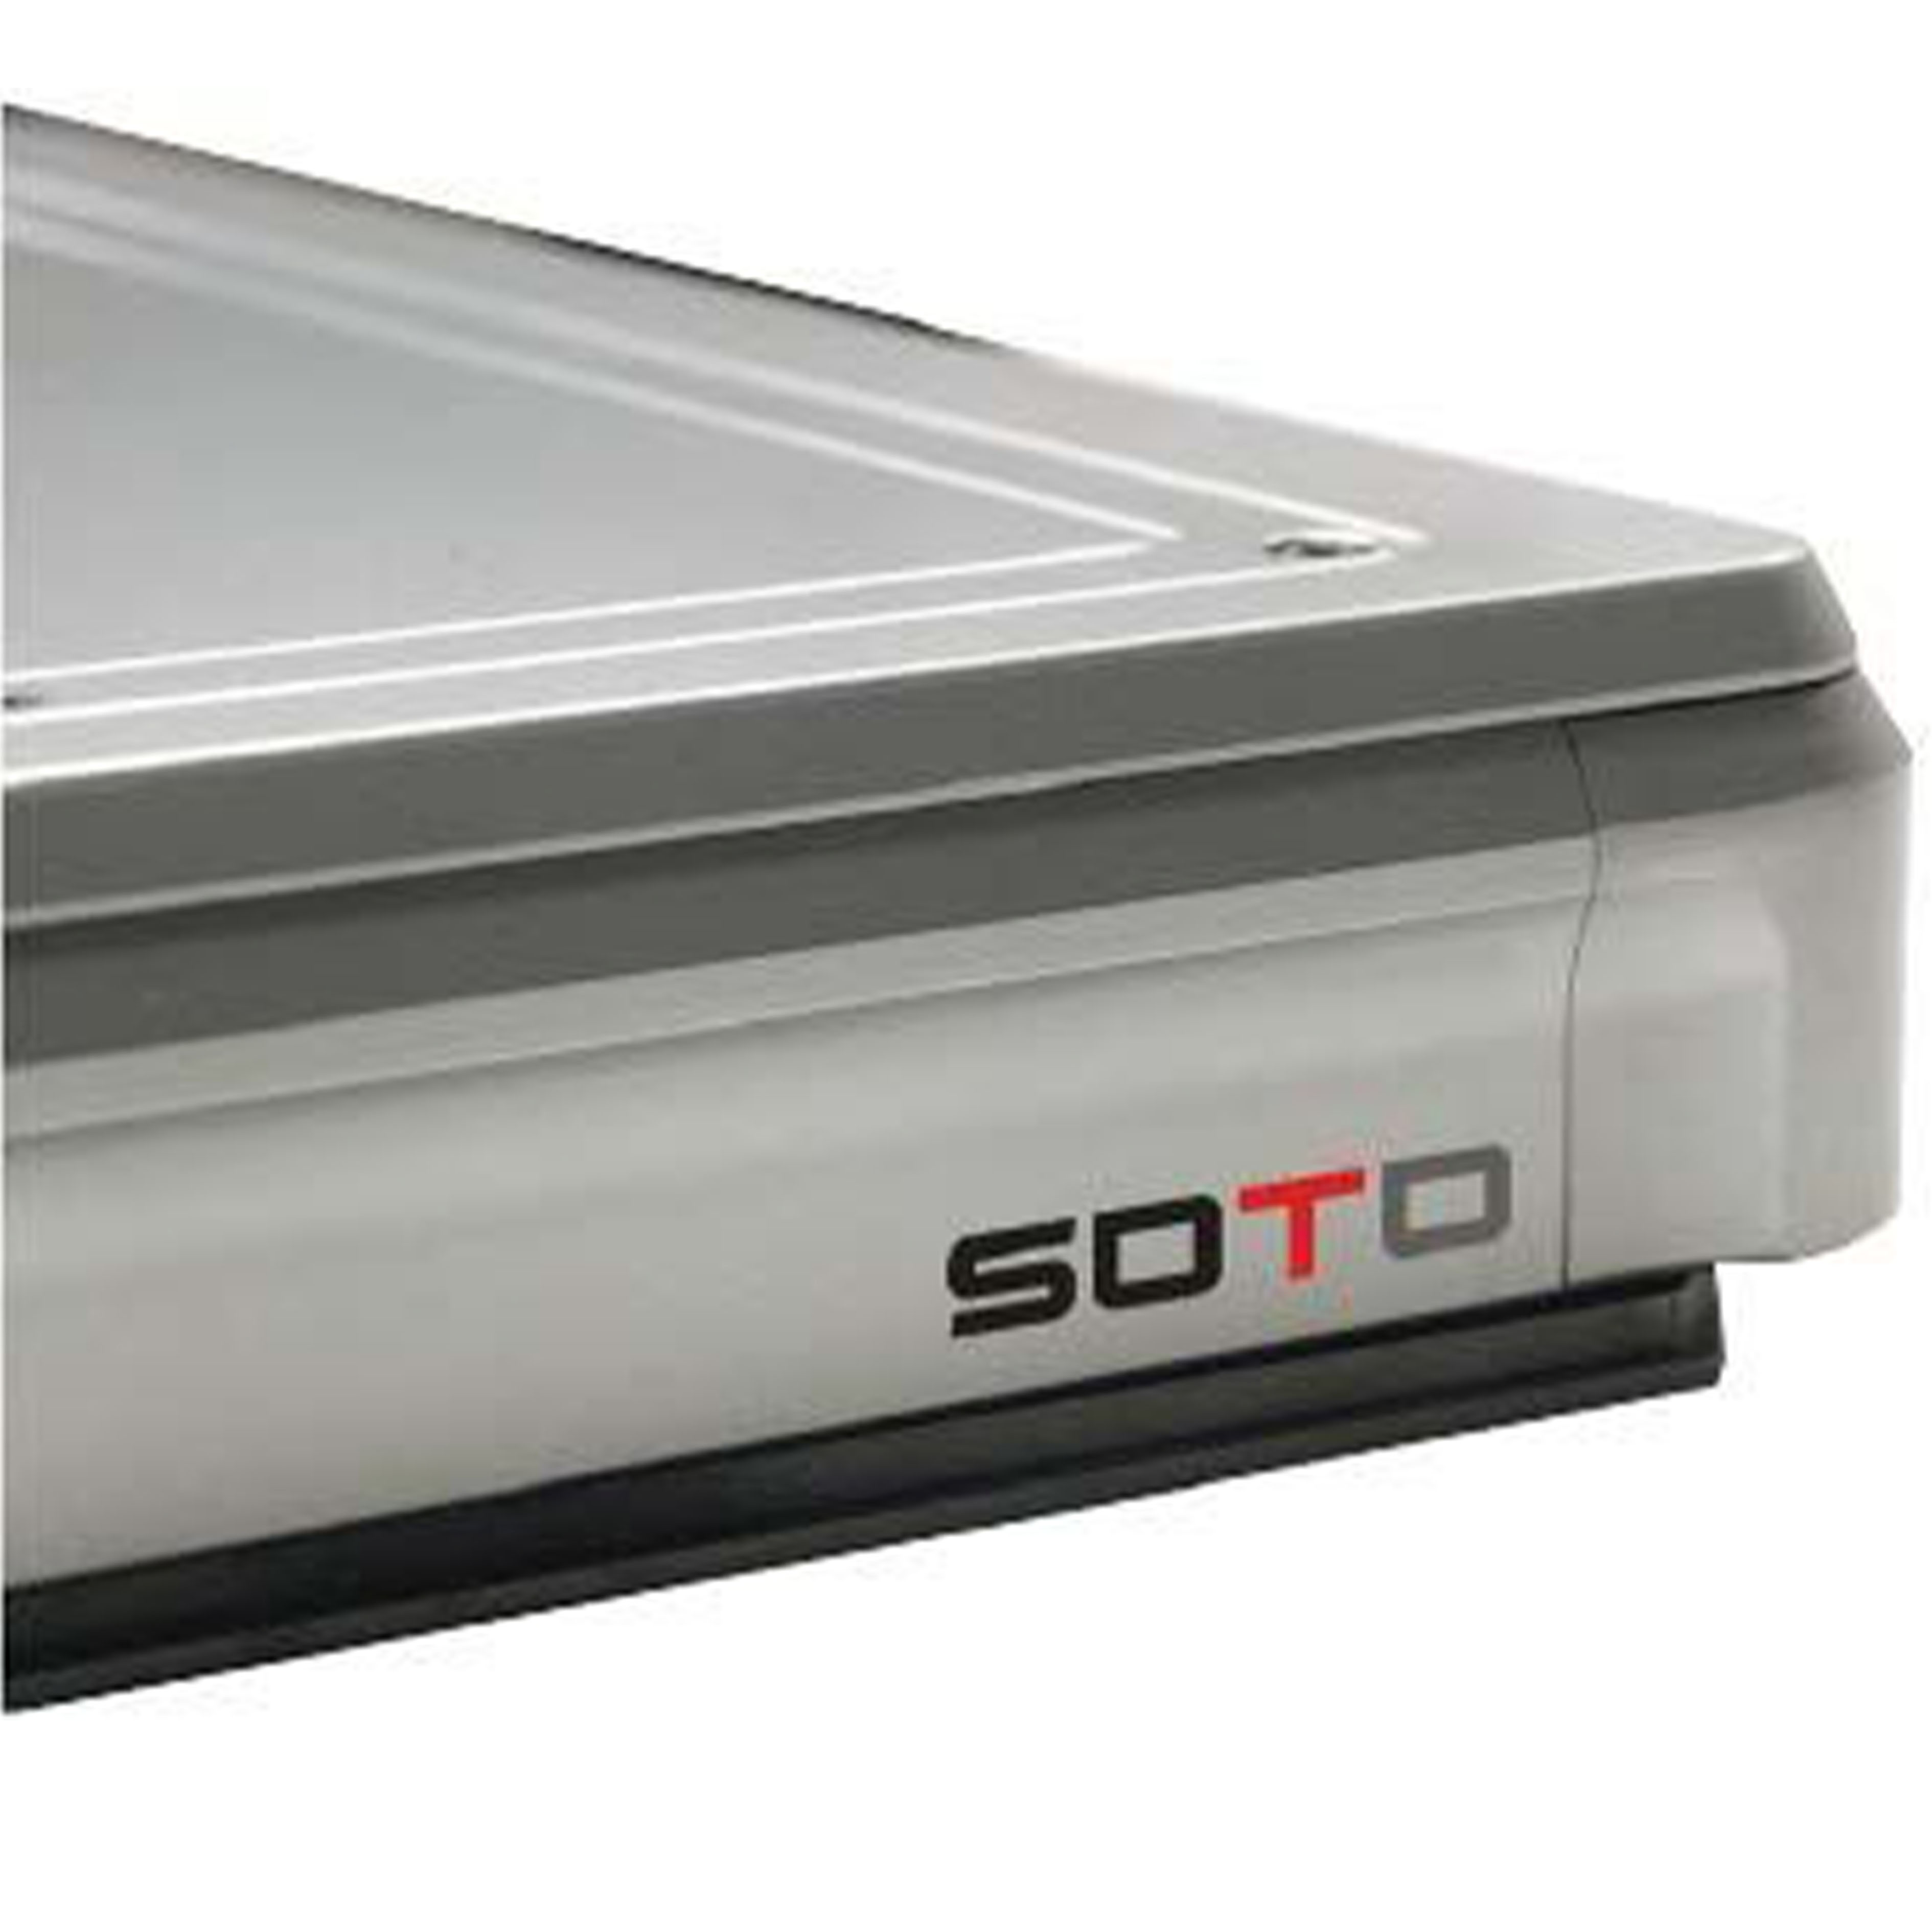 SOTO-TT 被动式桌面隔振器